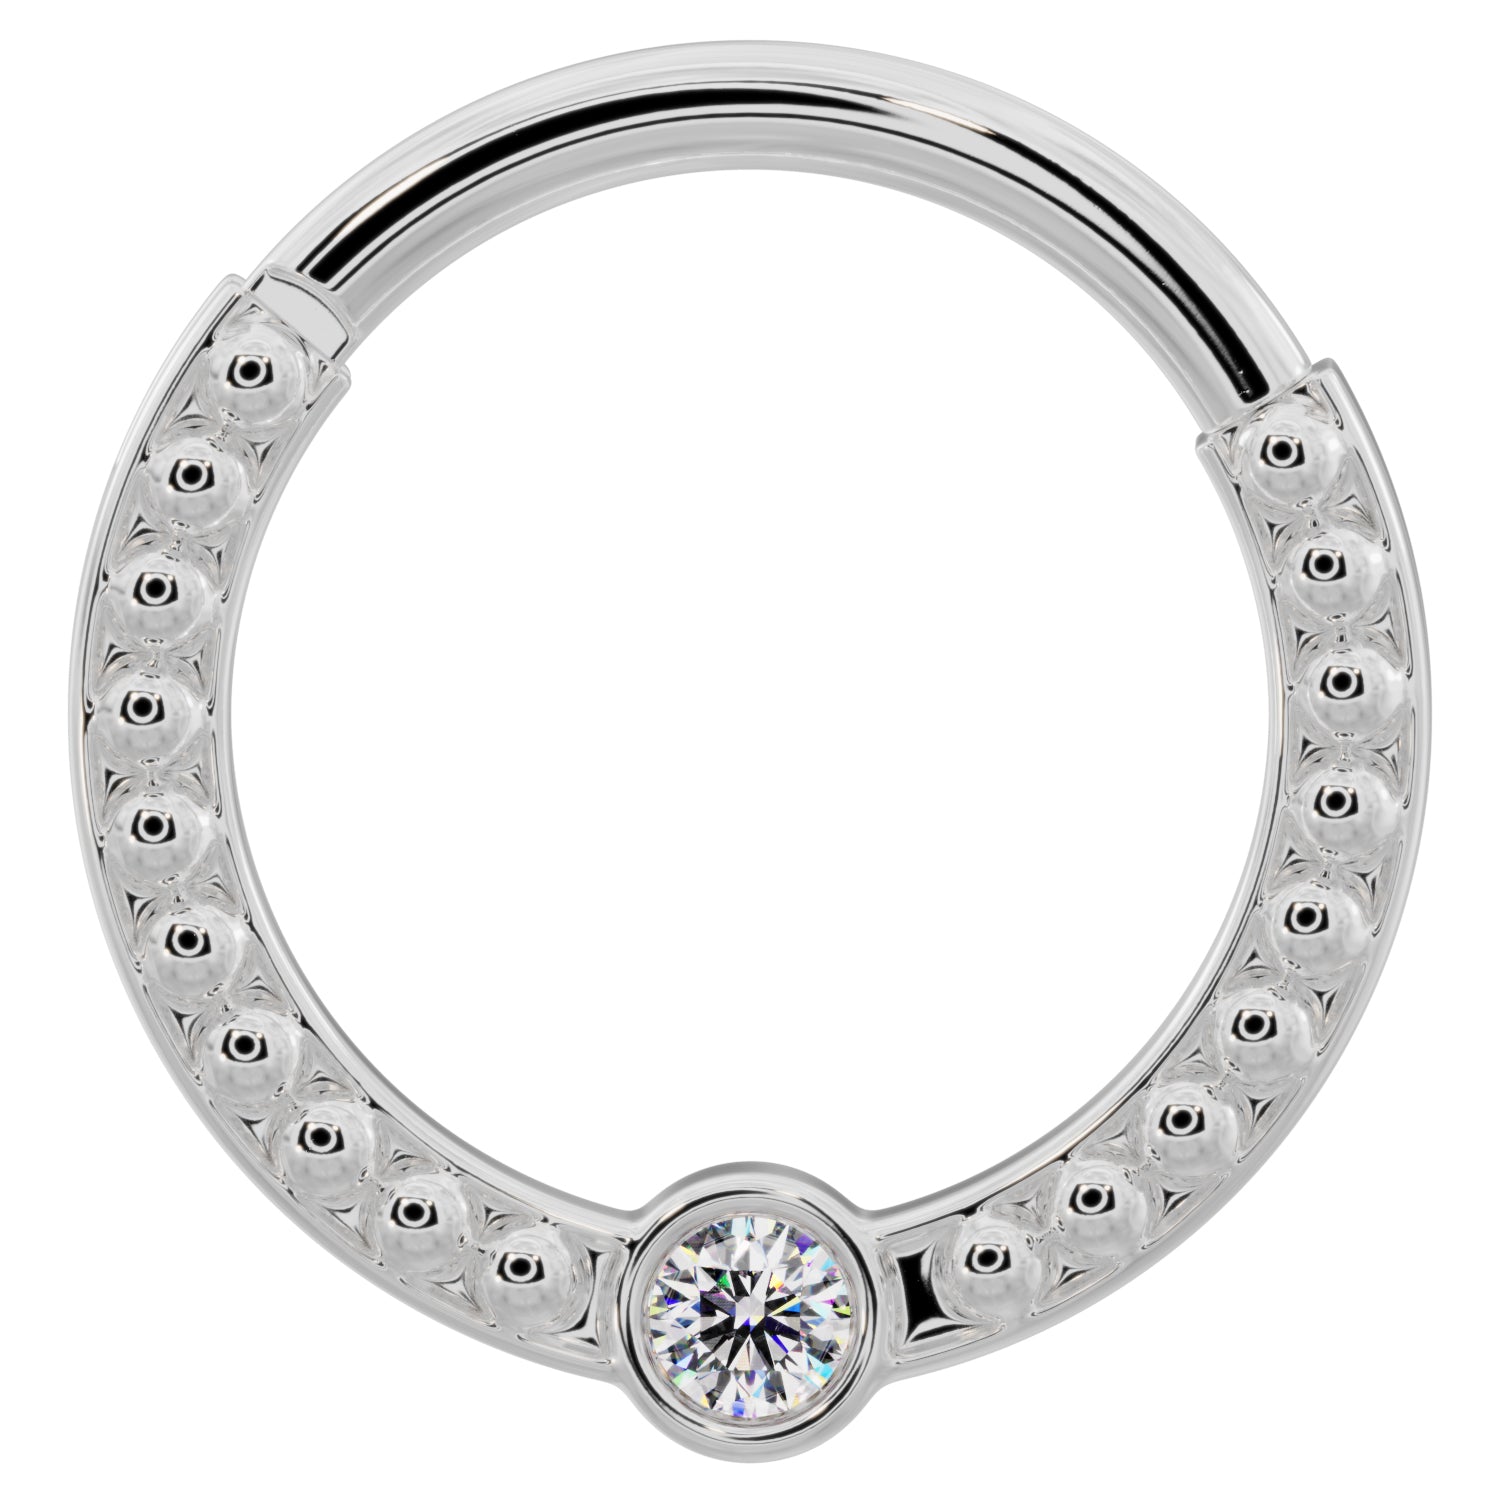 Diamond Bezel Channel-Set Dome Beads 14k Gold Clicker Ring-14K White Gold   14G (1.6mm)   5 8